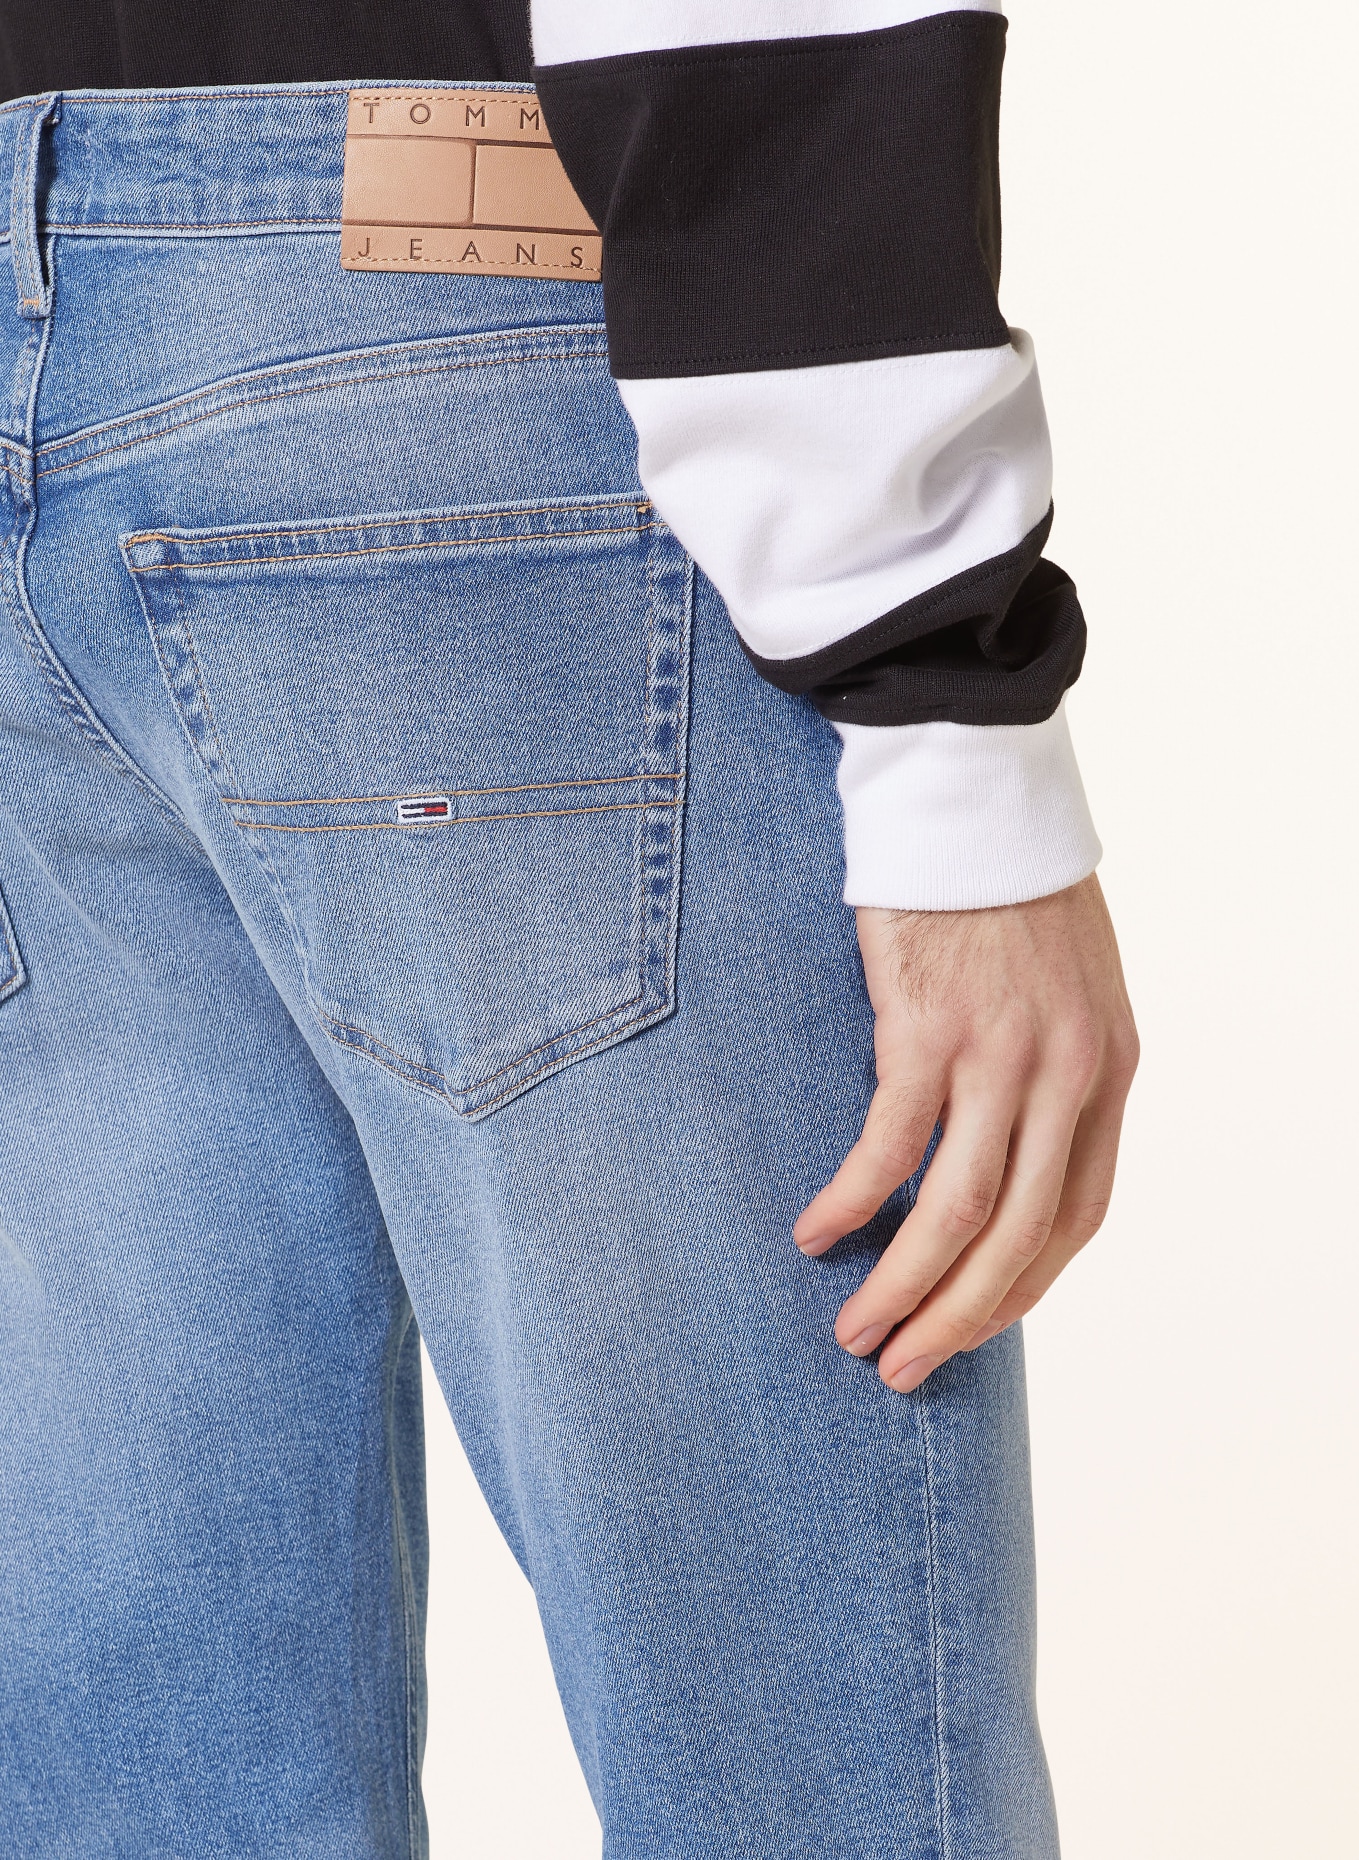 TOMMY JEANS Jeans SCANTON Slim Fit, Color: 1AB Denim Light (Image 6)